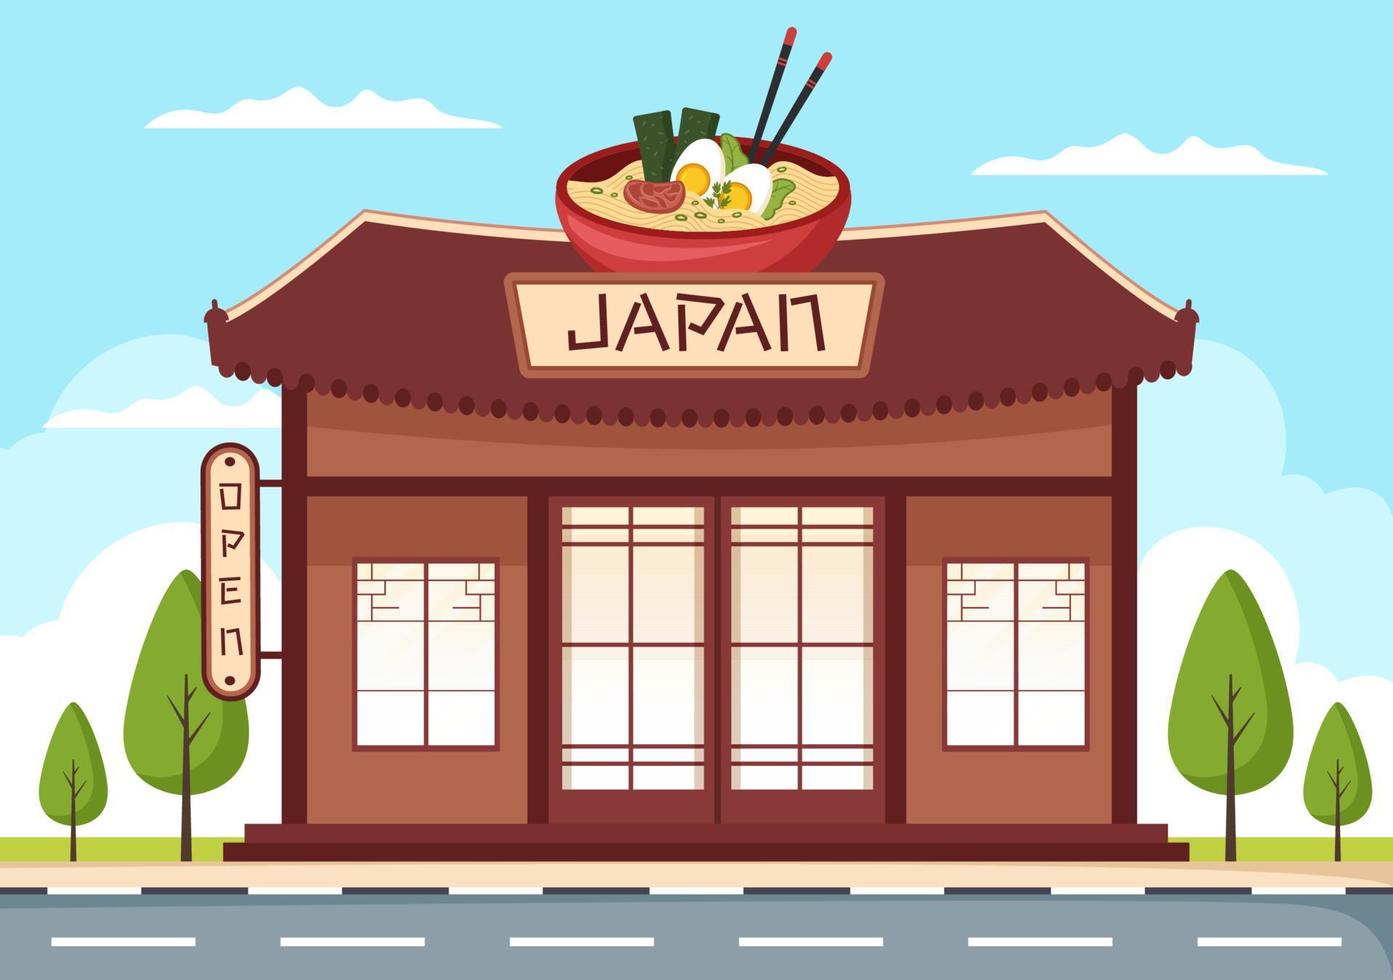 japanische lebensmittelgebäude-karikaturillustration vektor